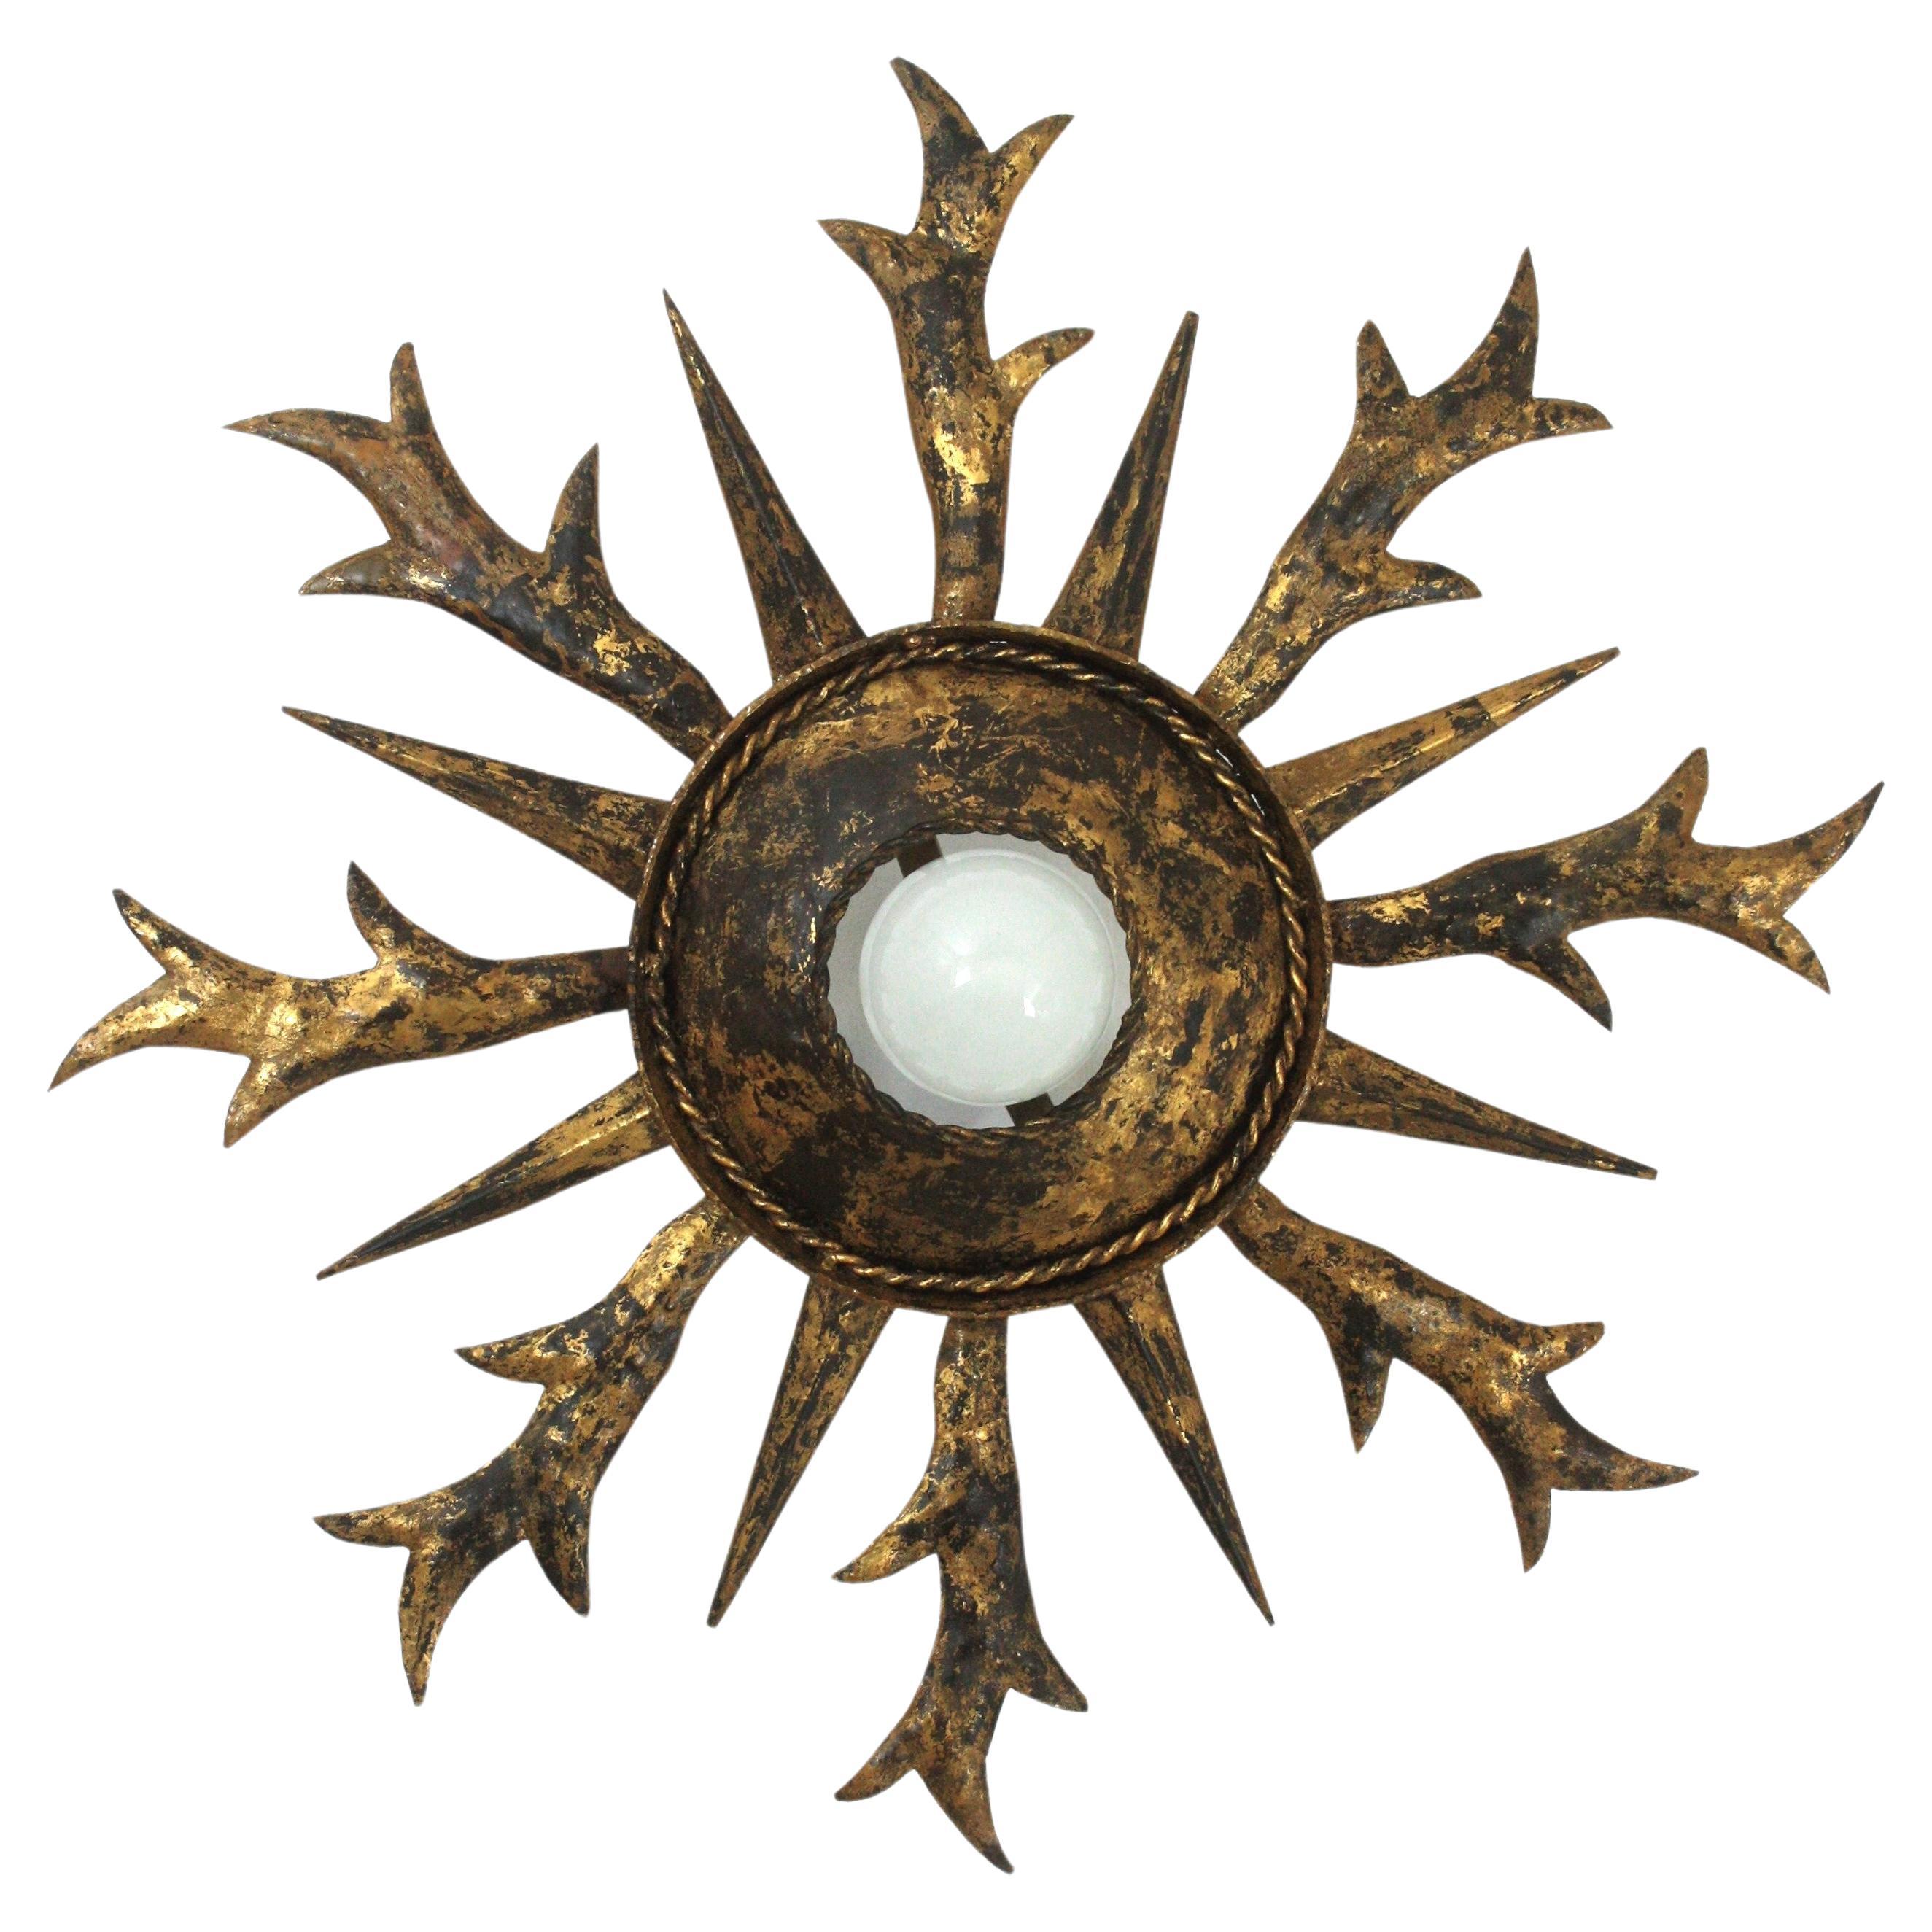 Spanische Einbaubeleuchtung mit Sonnenschliff und Blattwerk, Schmiedeeisen, vergoldetes Eisen